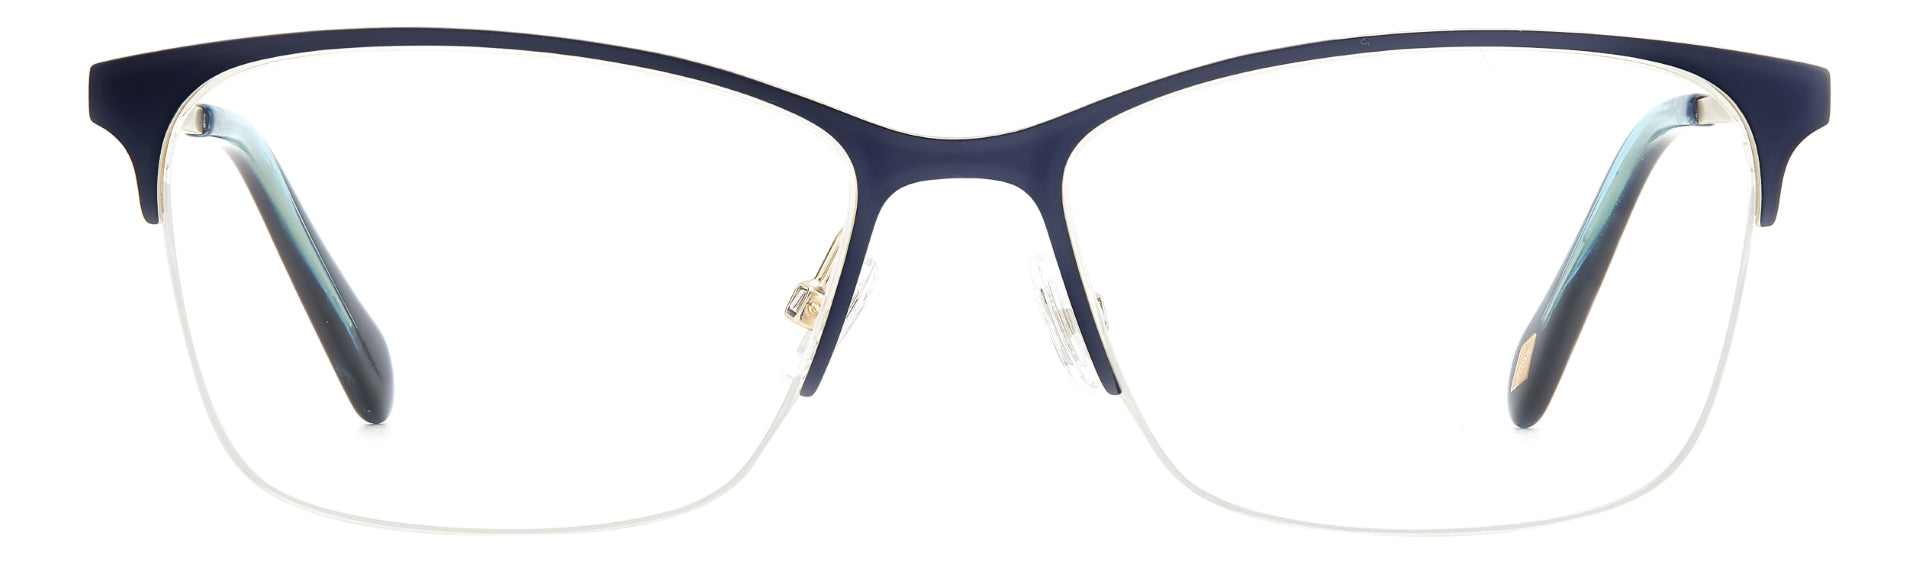 FOSSIL WOMEN RECTANGULAR Eyeglasses-FOS 7142 S53